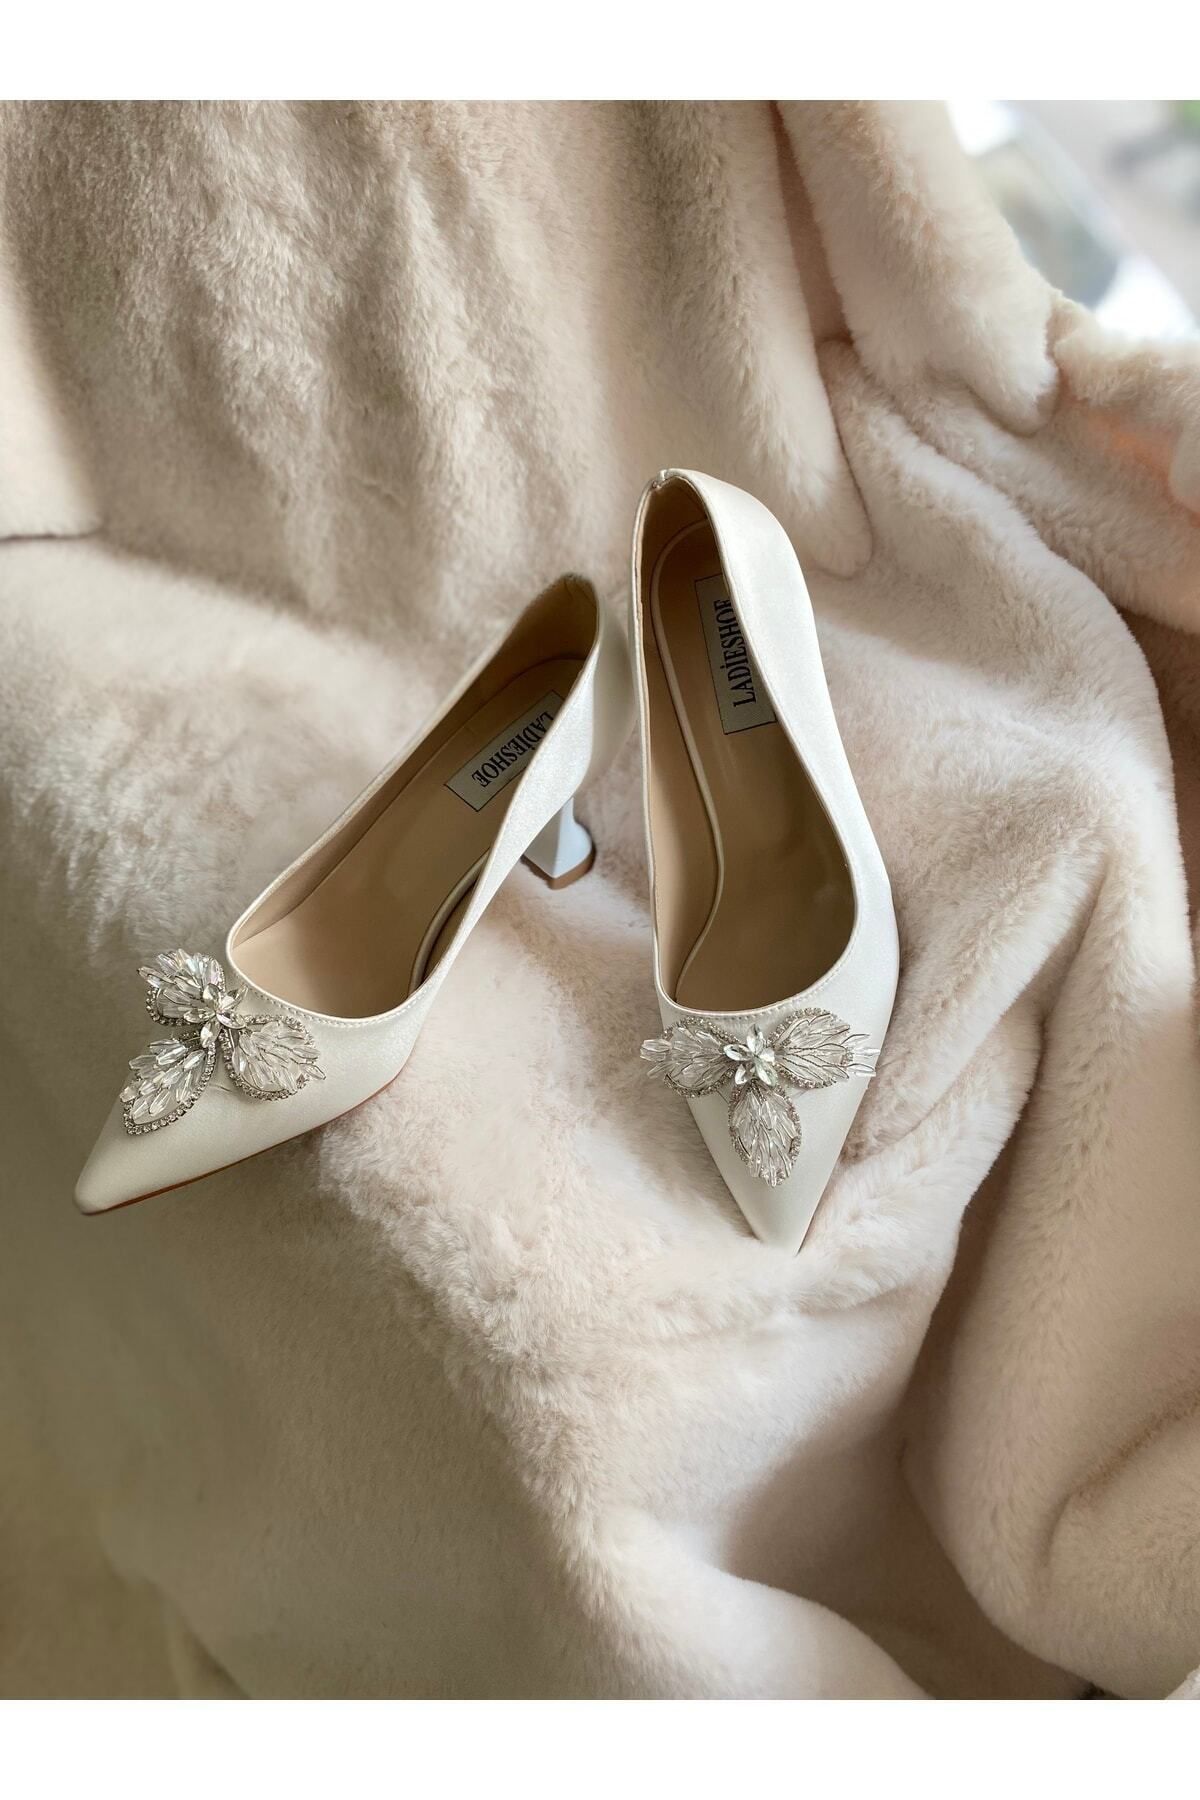 LADİESHOE Taşlı Kadın Ayakkabı Beyaz Stiletto